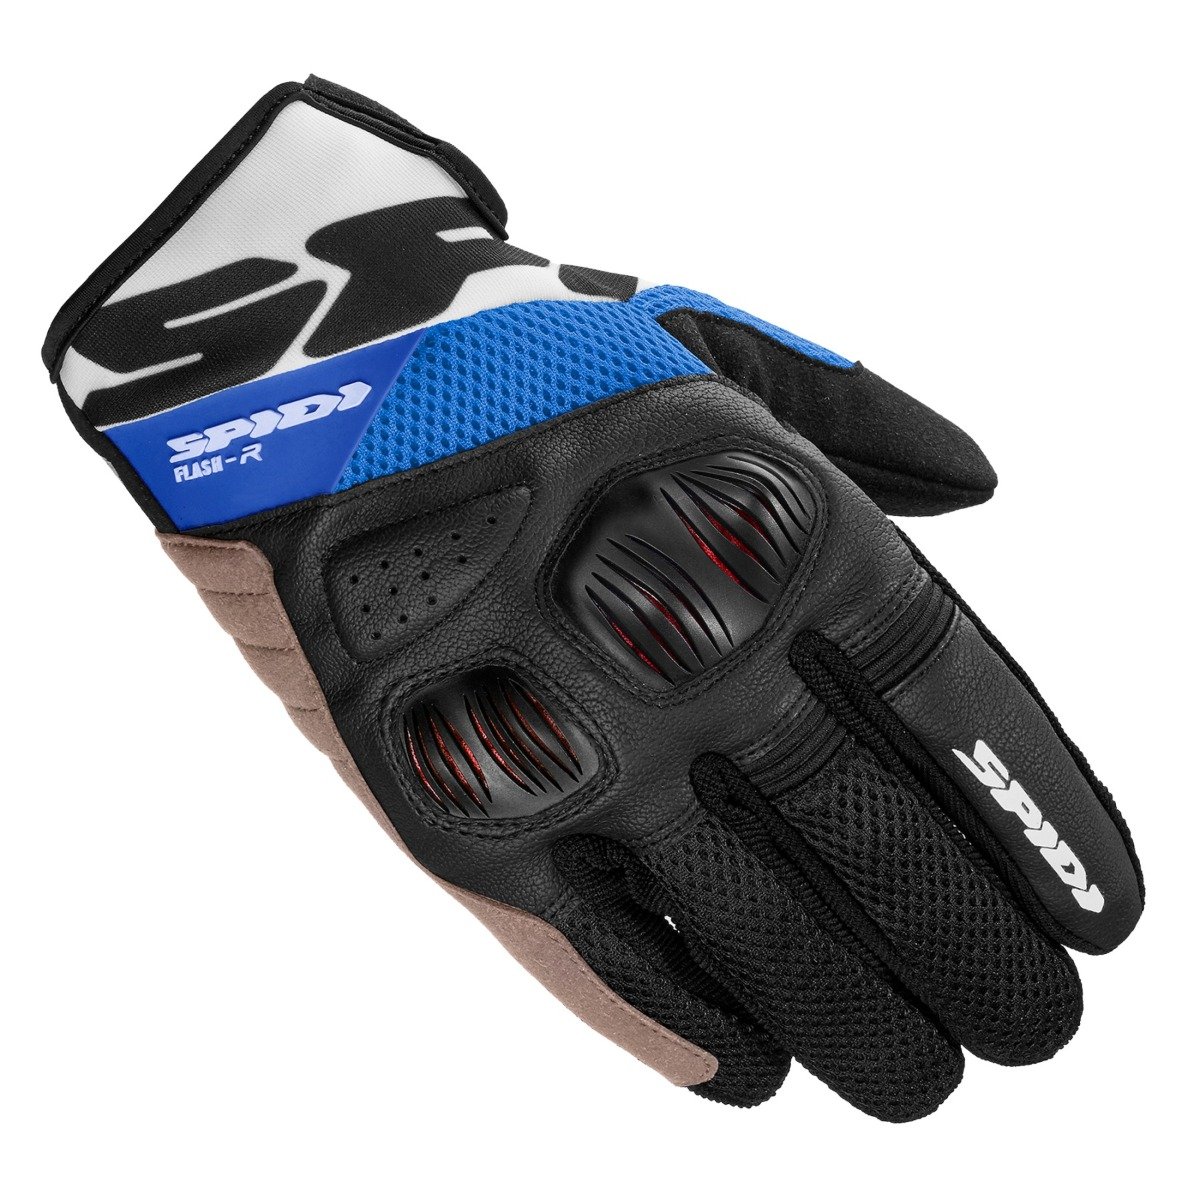 Image of Spidi Flash R Evo K Schwarz Blau Handschuhe Größe XL